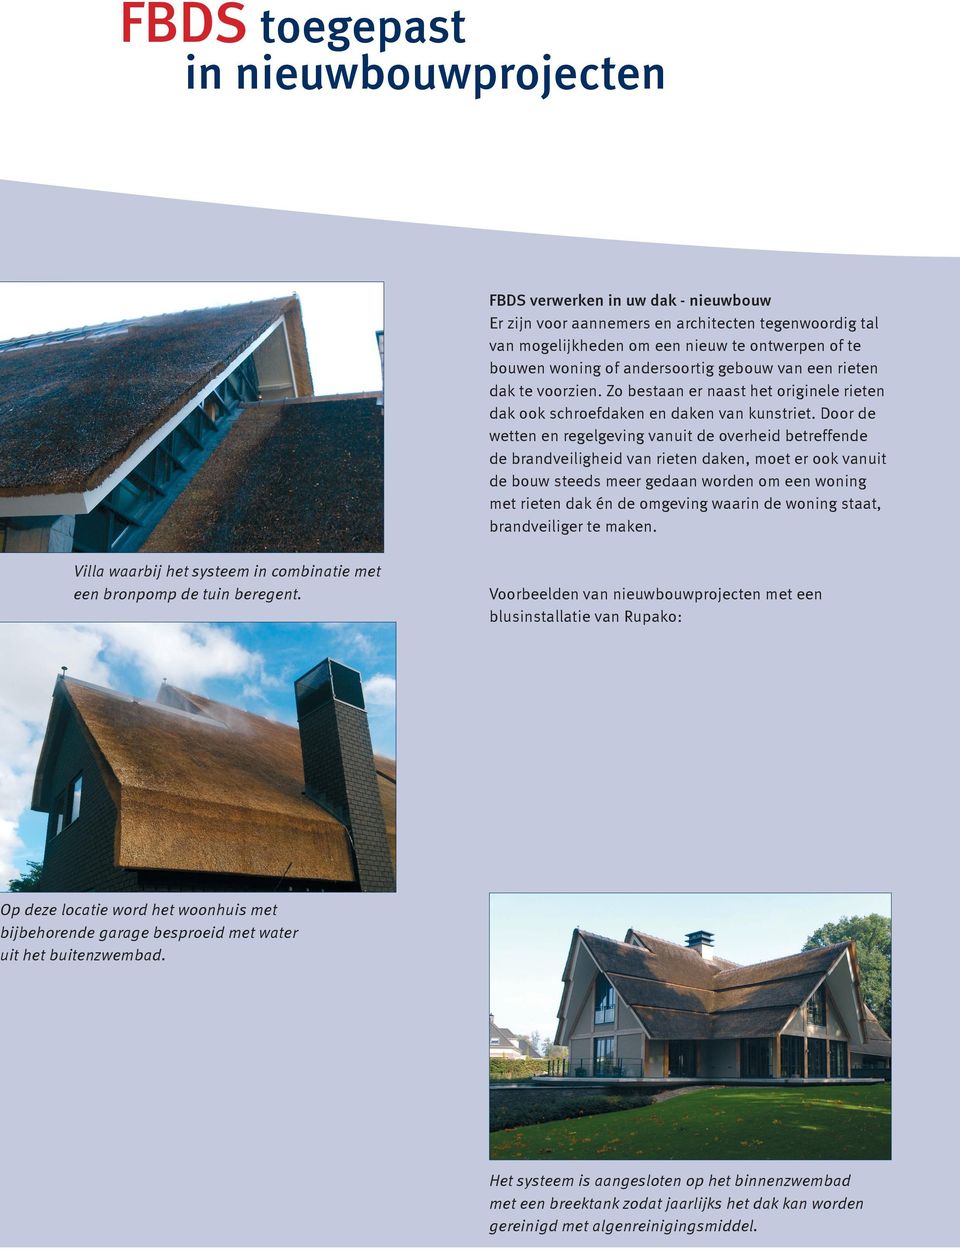 Door de wetten en regelgeving vanuit de overheid betreffende de brandveiligheid van rieten daken, moet er ook vanuit de bouw steeds meer gedaan worden om een woning met rieten dak én de omgeving